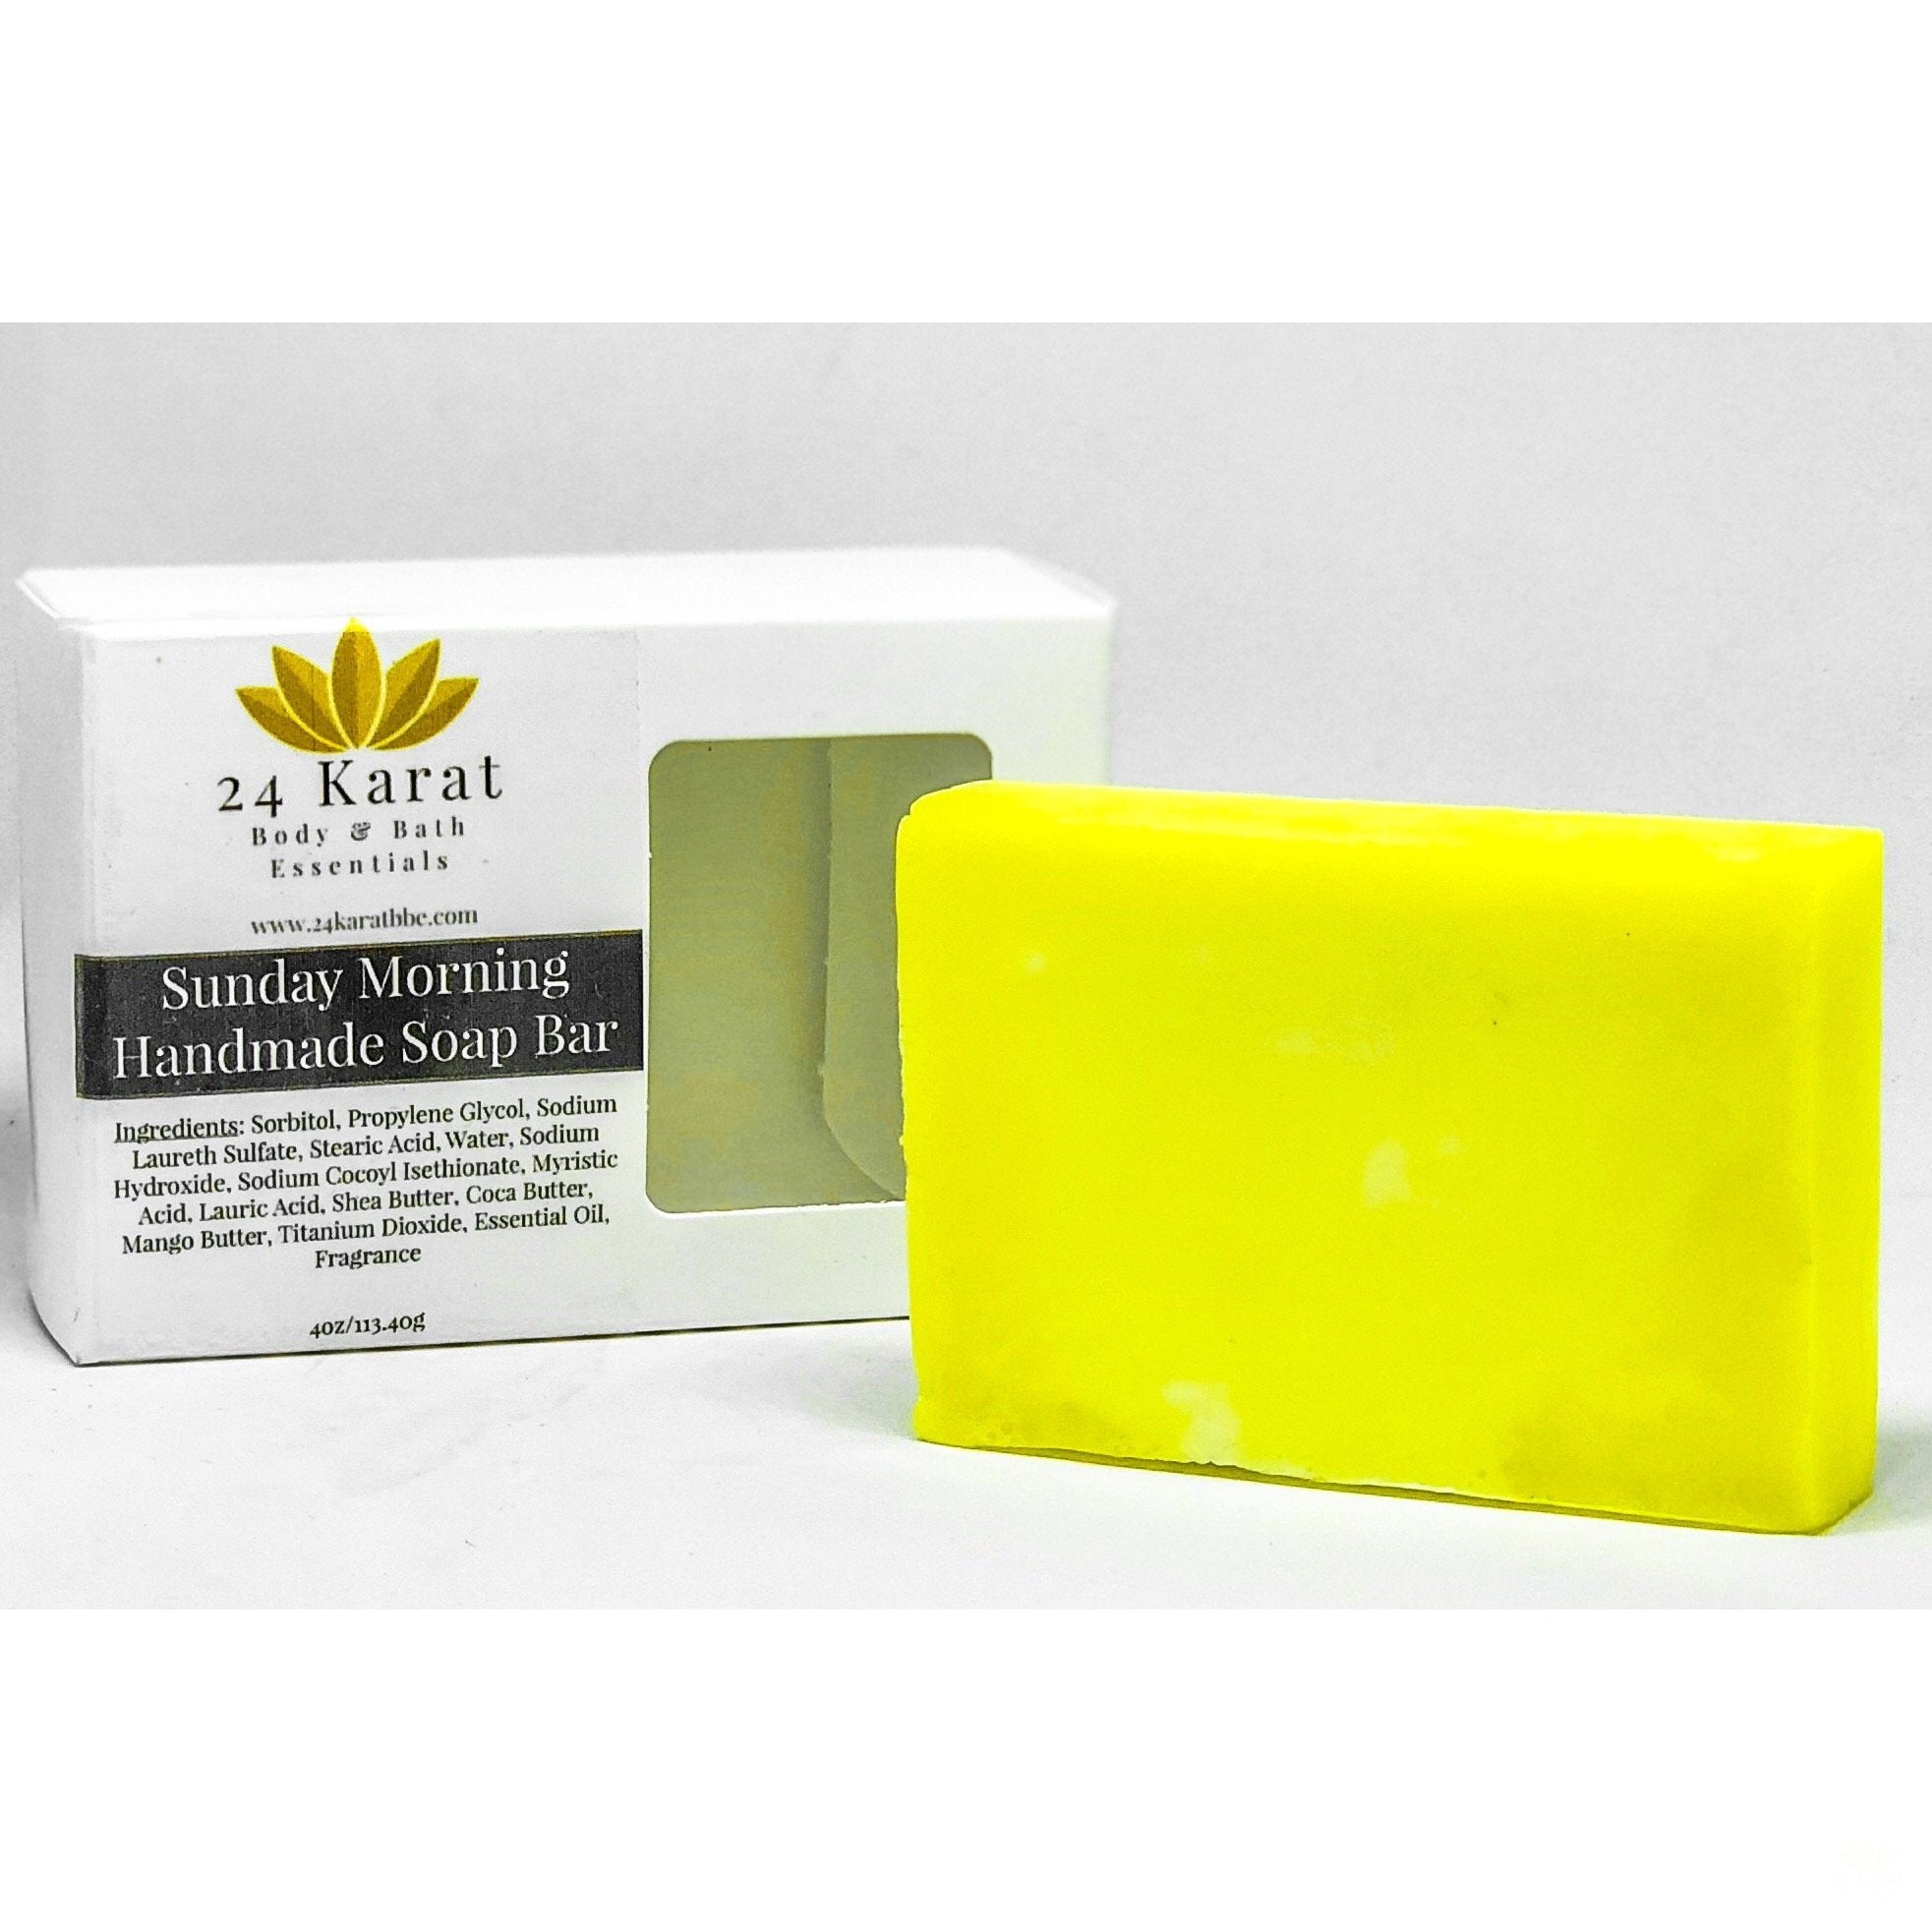 Triple Butter Handmade Soap Bar - 24 Karat Body & Bath Essentials